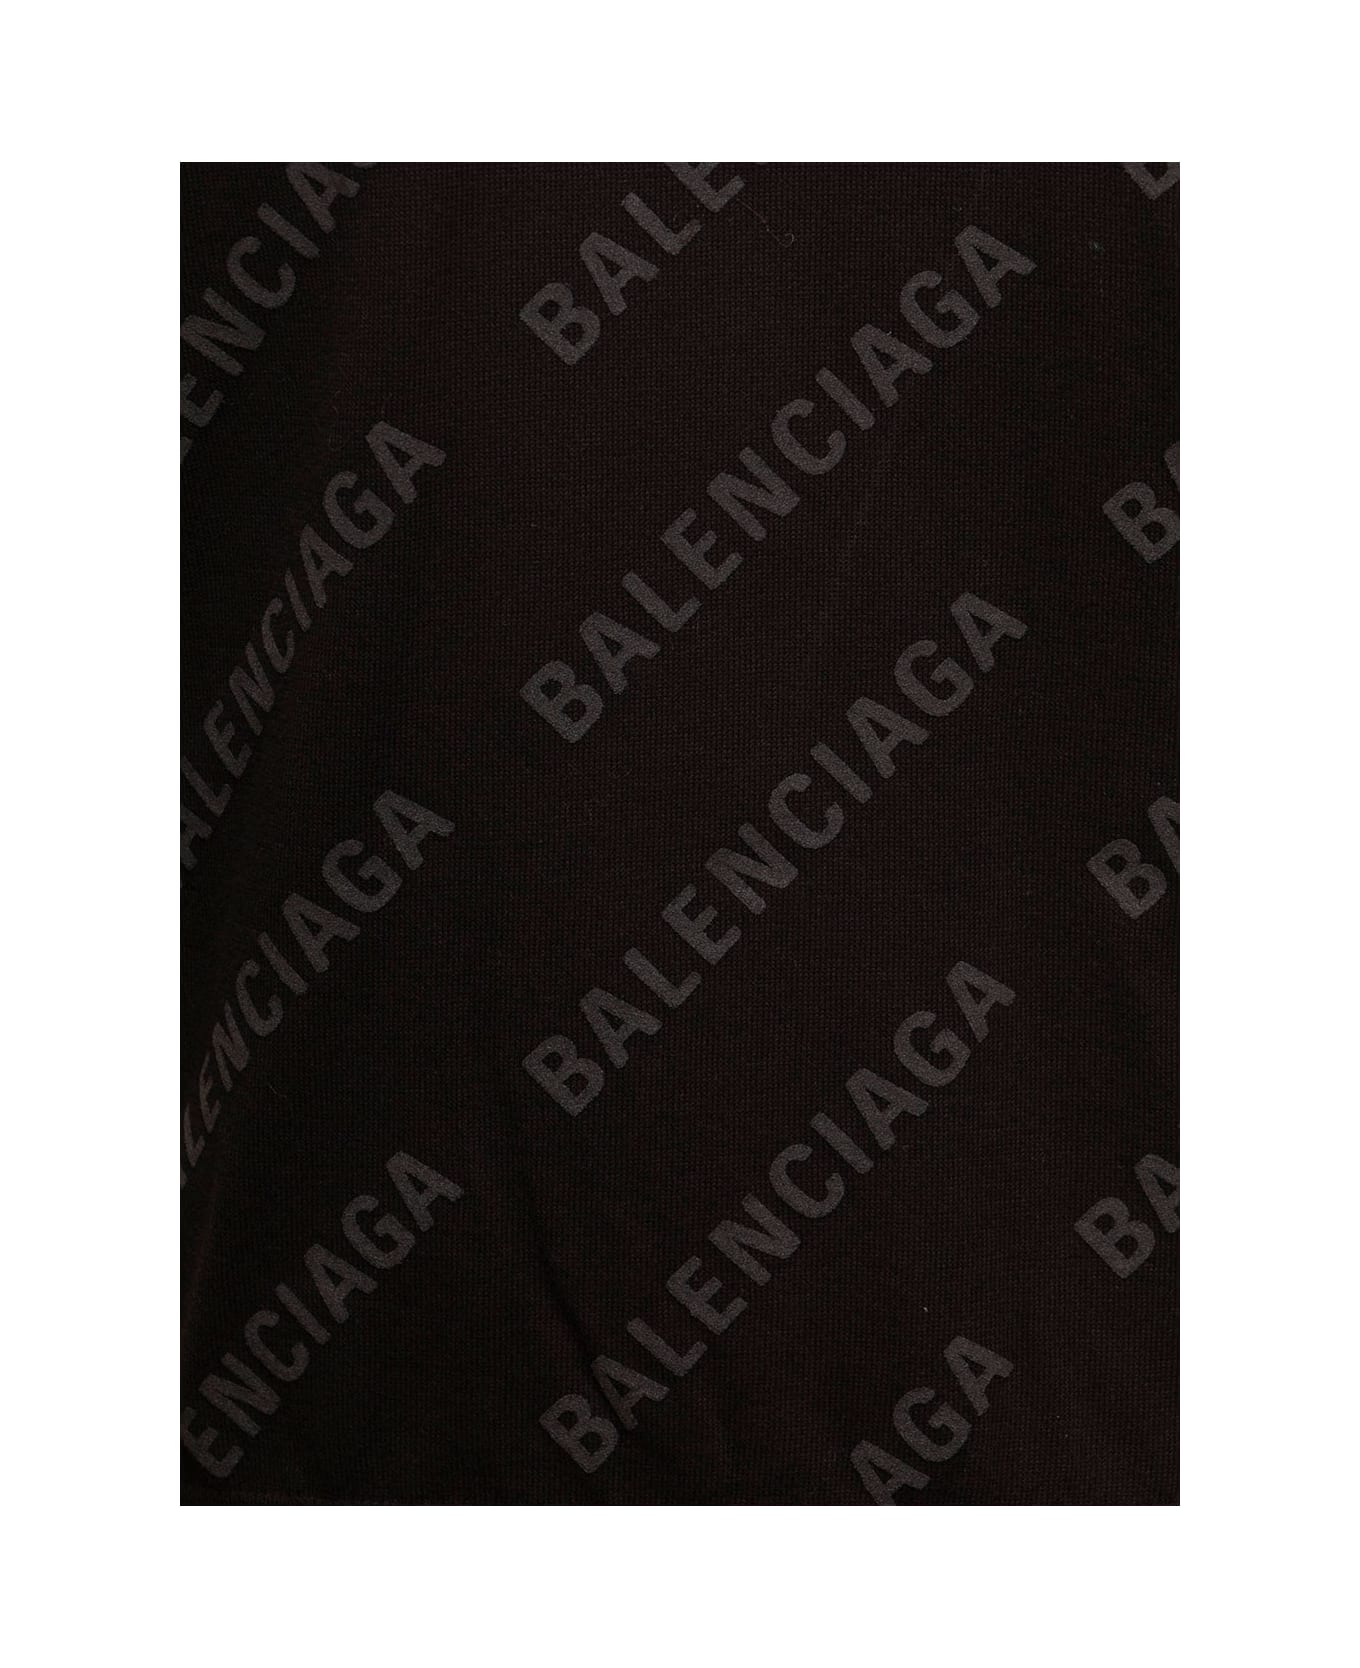 Balenciaga Brown Cotton Cardigan With Jacquard Logo Print  Balenciaga Woman - Brown